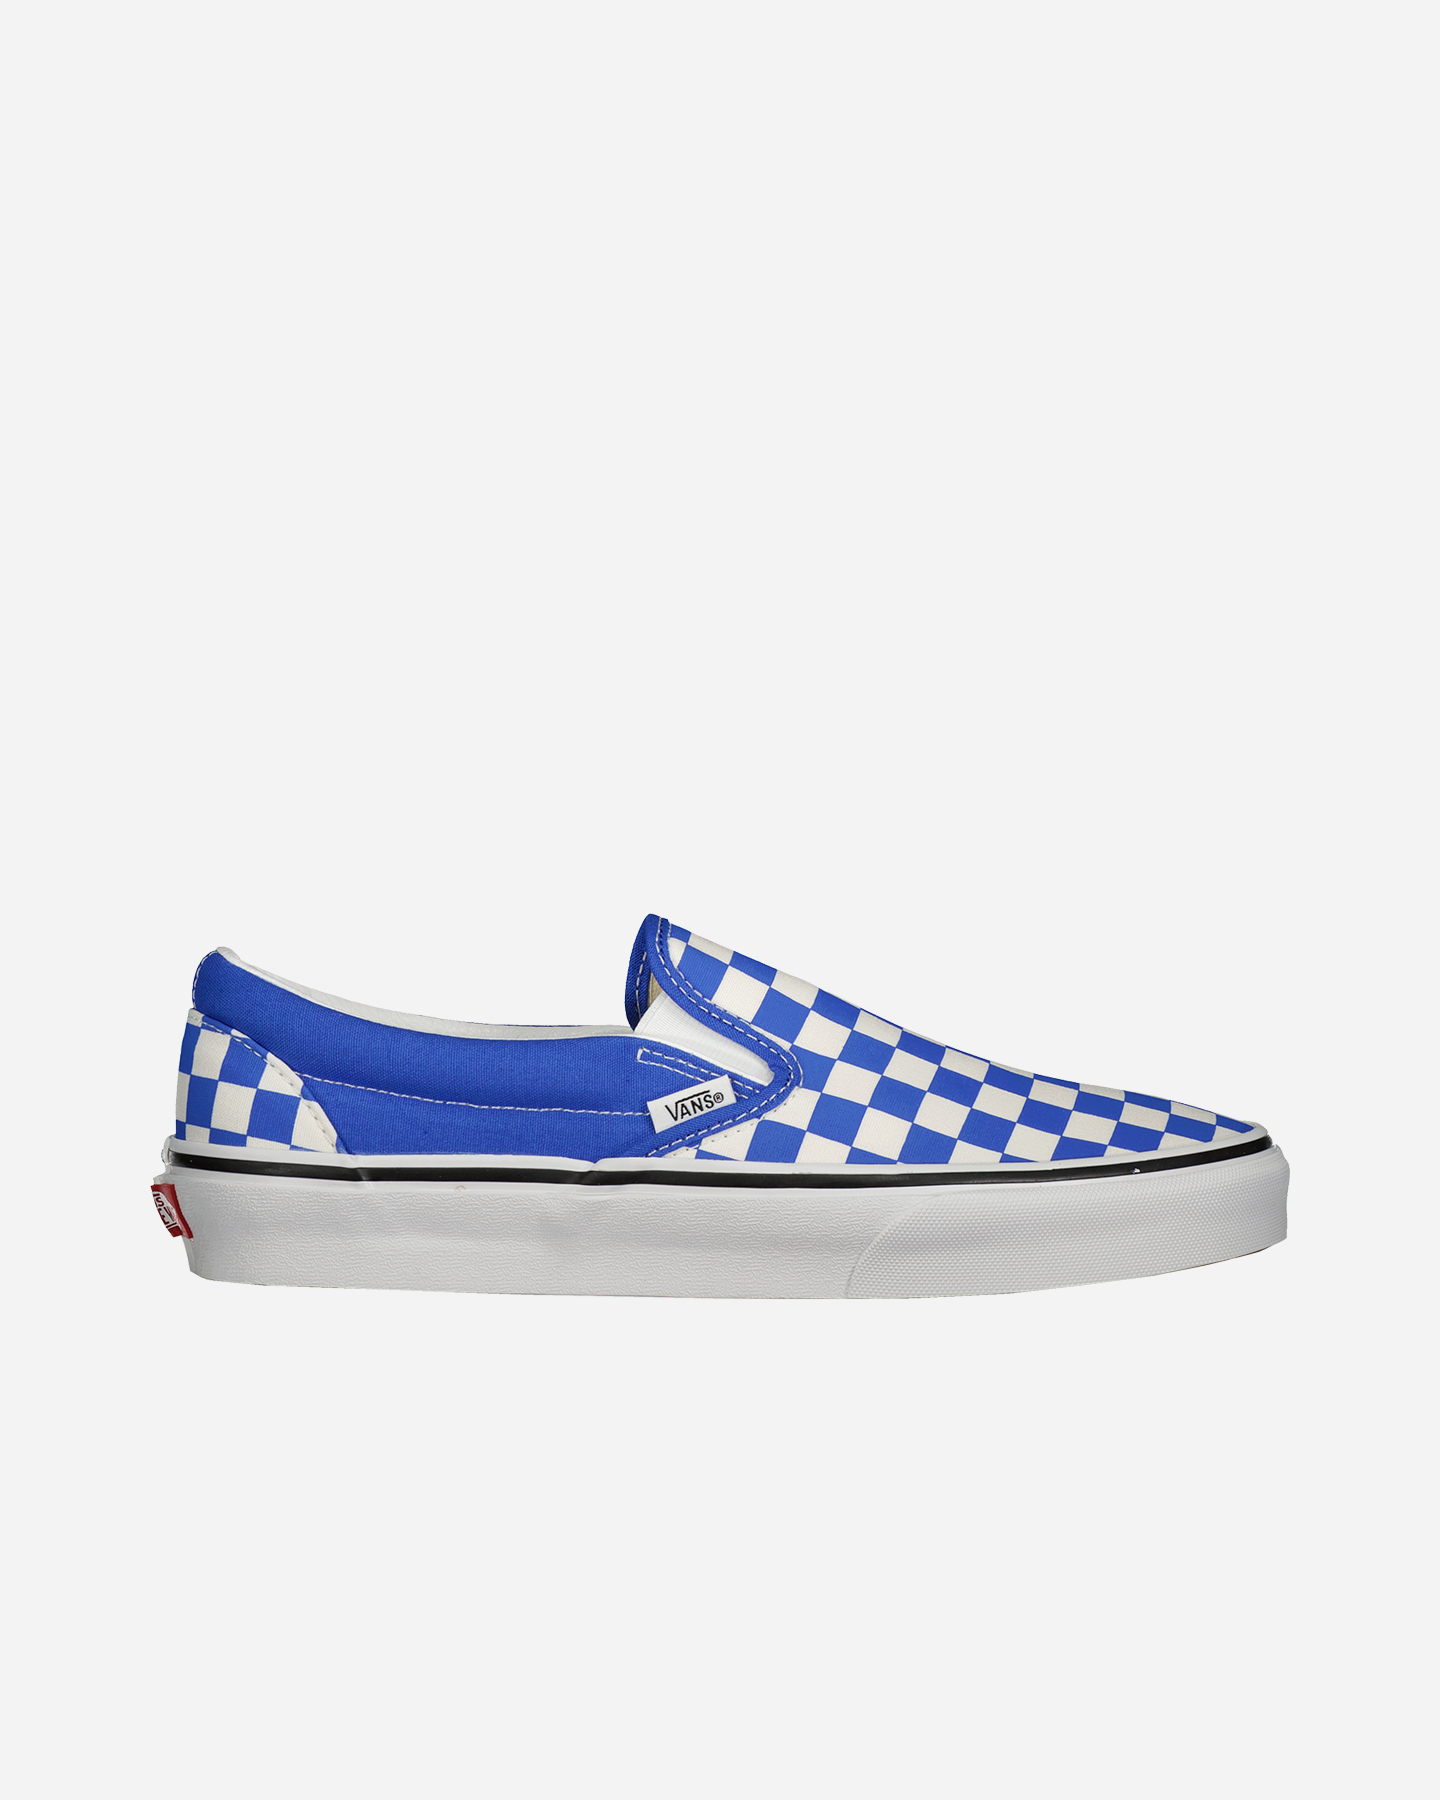 Vans Slip On Checkerboard M - Scarpe Sneakers - Uomo